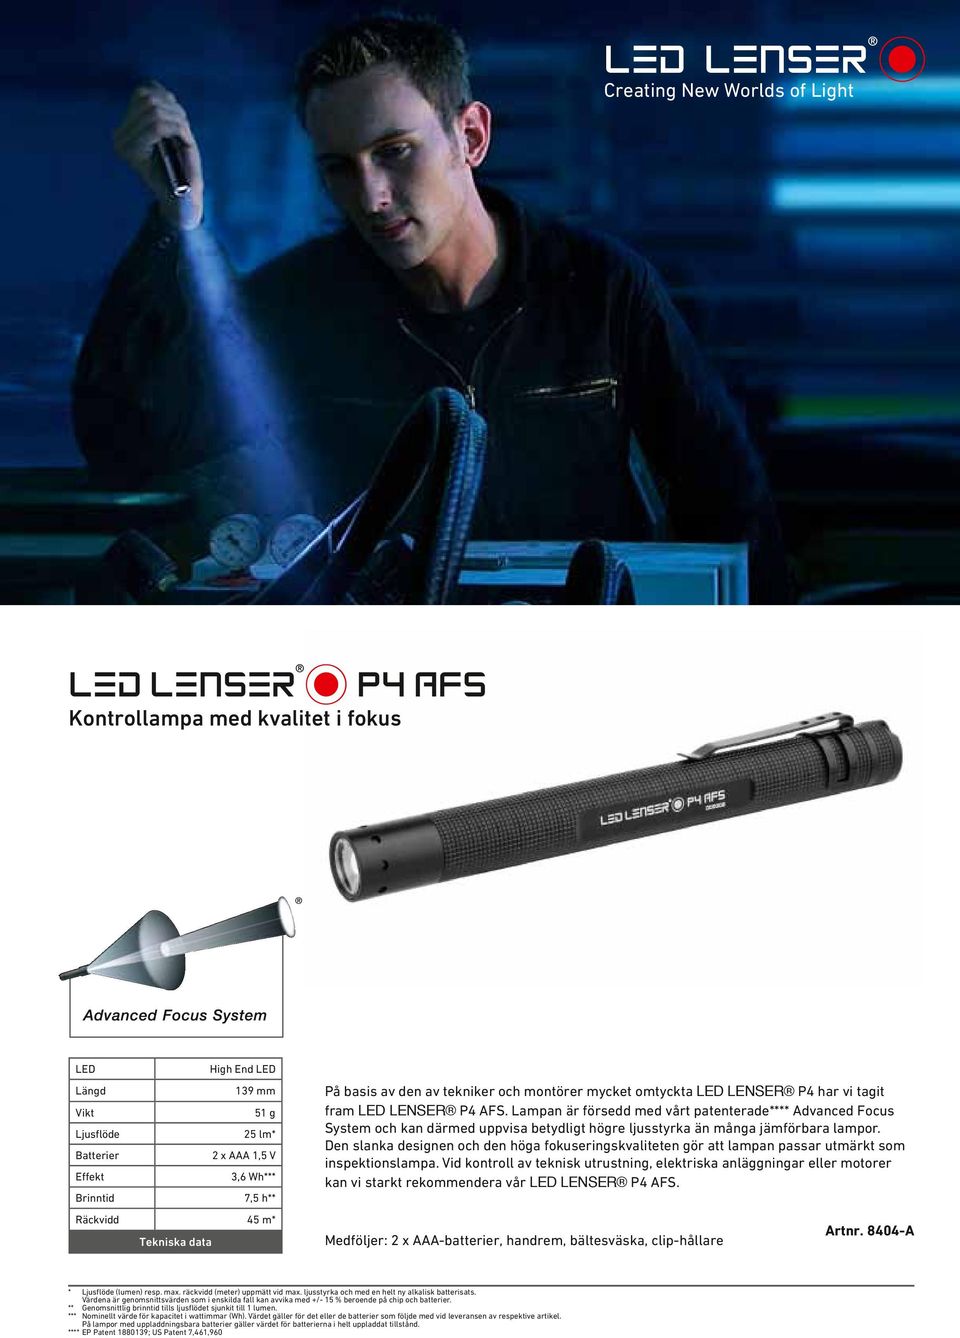 Lampan är försedd med vårt patenterade**** Advanced Focus System och kan därmed uppvisa betydligt högre ljusstyrka än många jämförbara lampor.